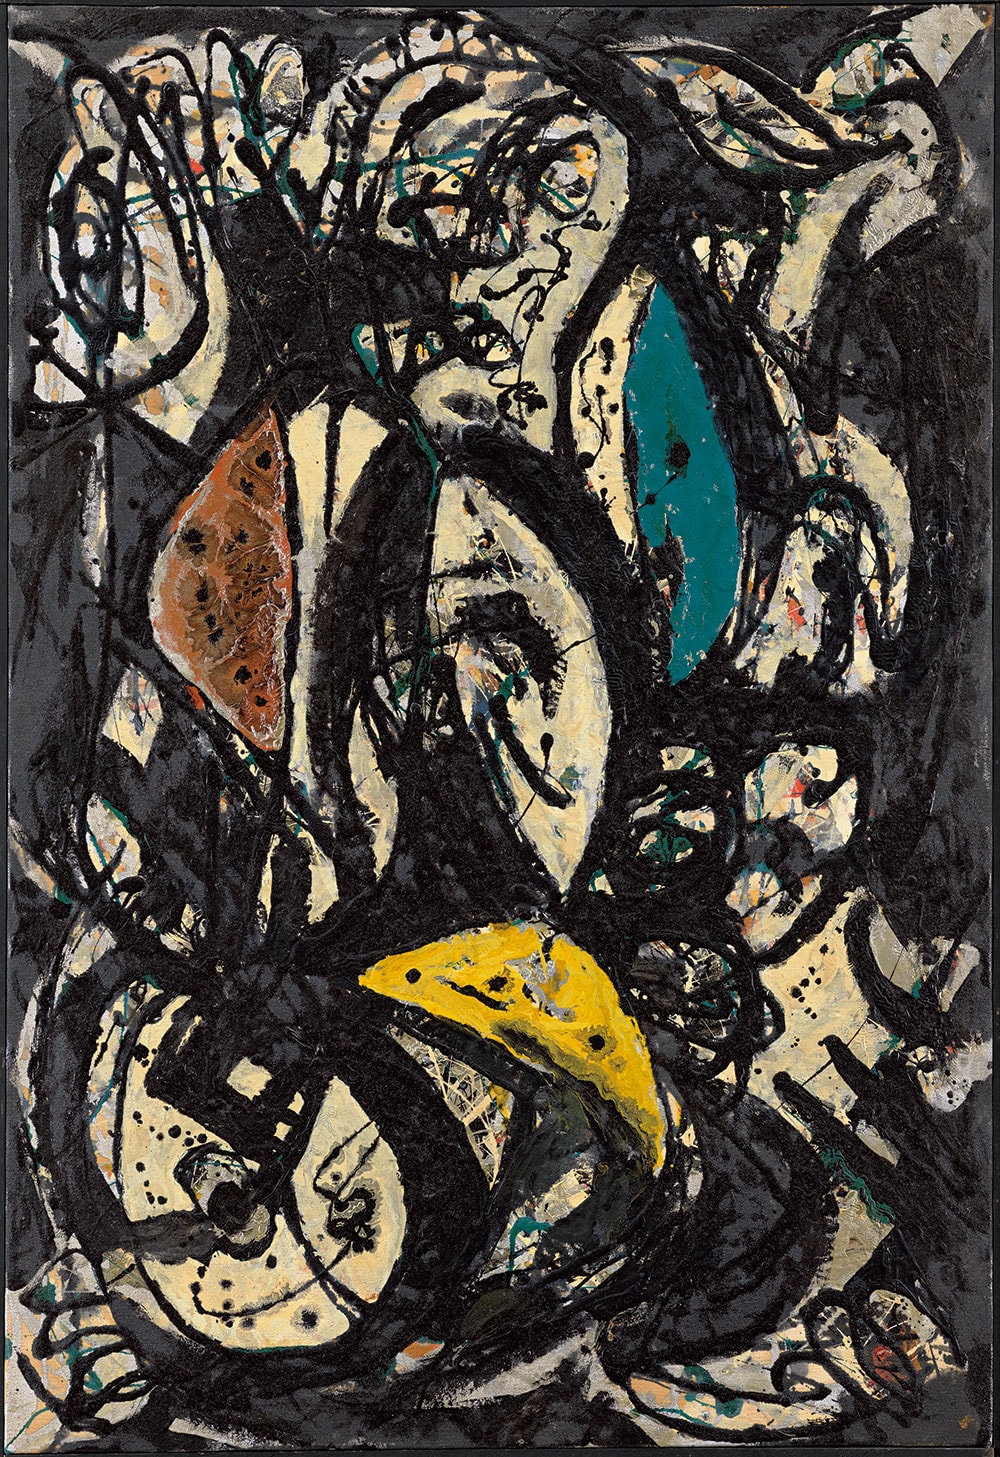 ジャクソン・ポロック《Number 2,1951》1951年。抽象表現主義の代表的な画家、ジャクソン・ポロックの後期の作品。黒や様々な色の線のなかに天体のモティーフなどが描かれている。